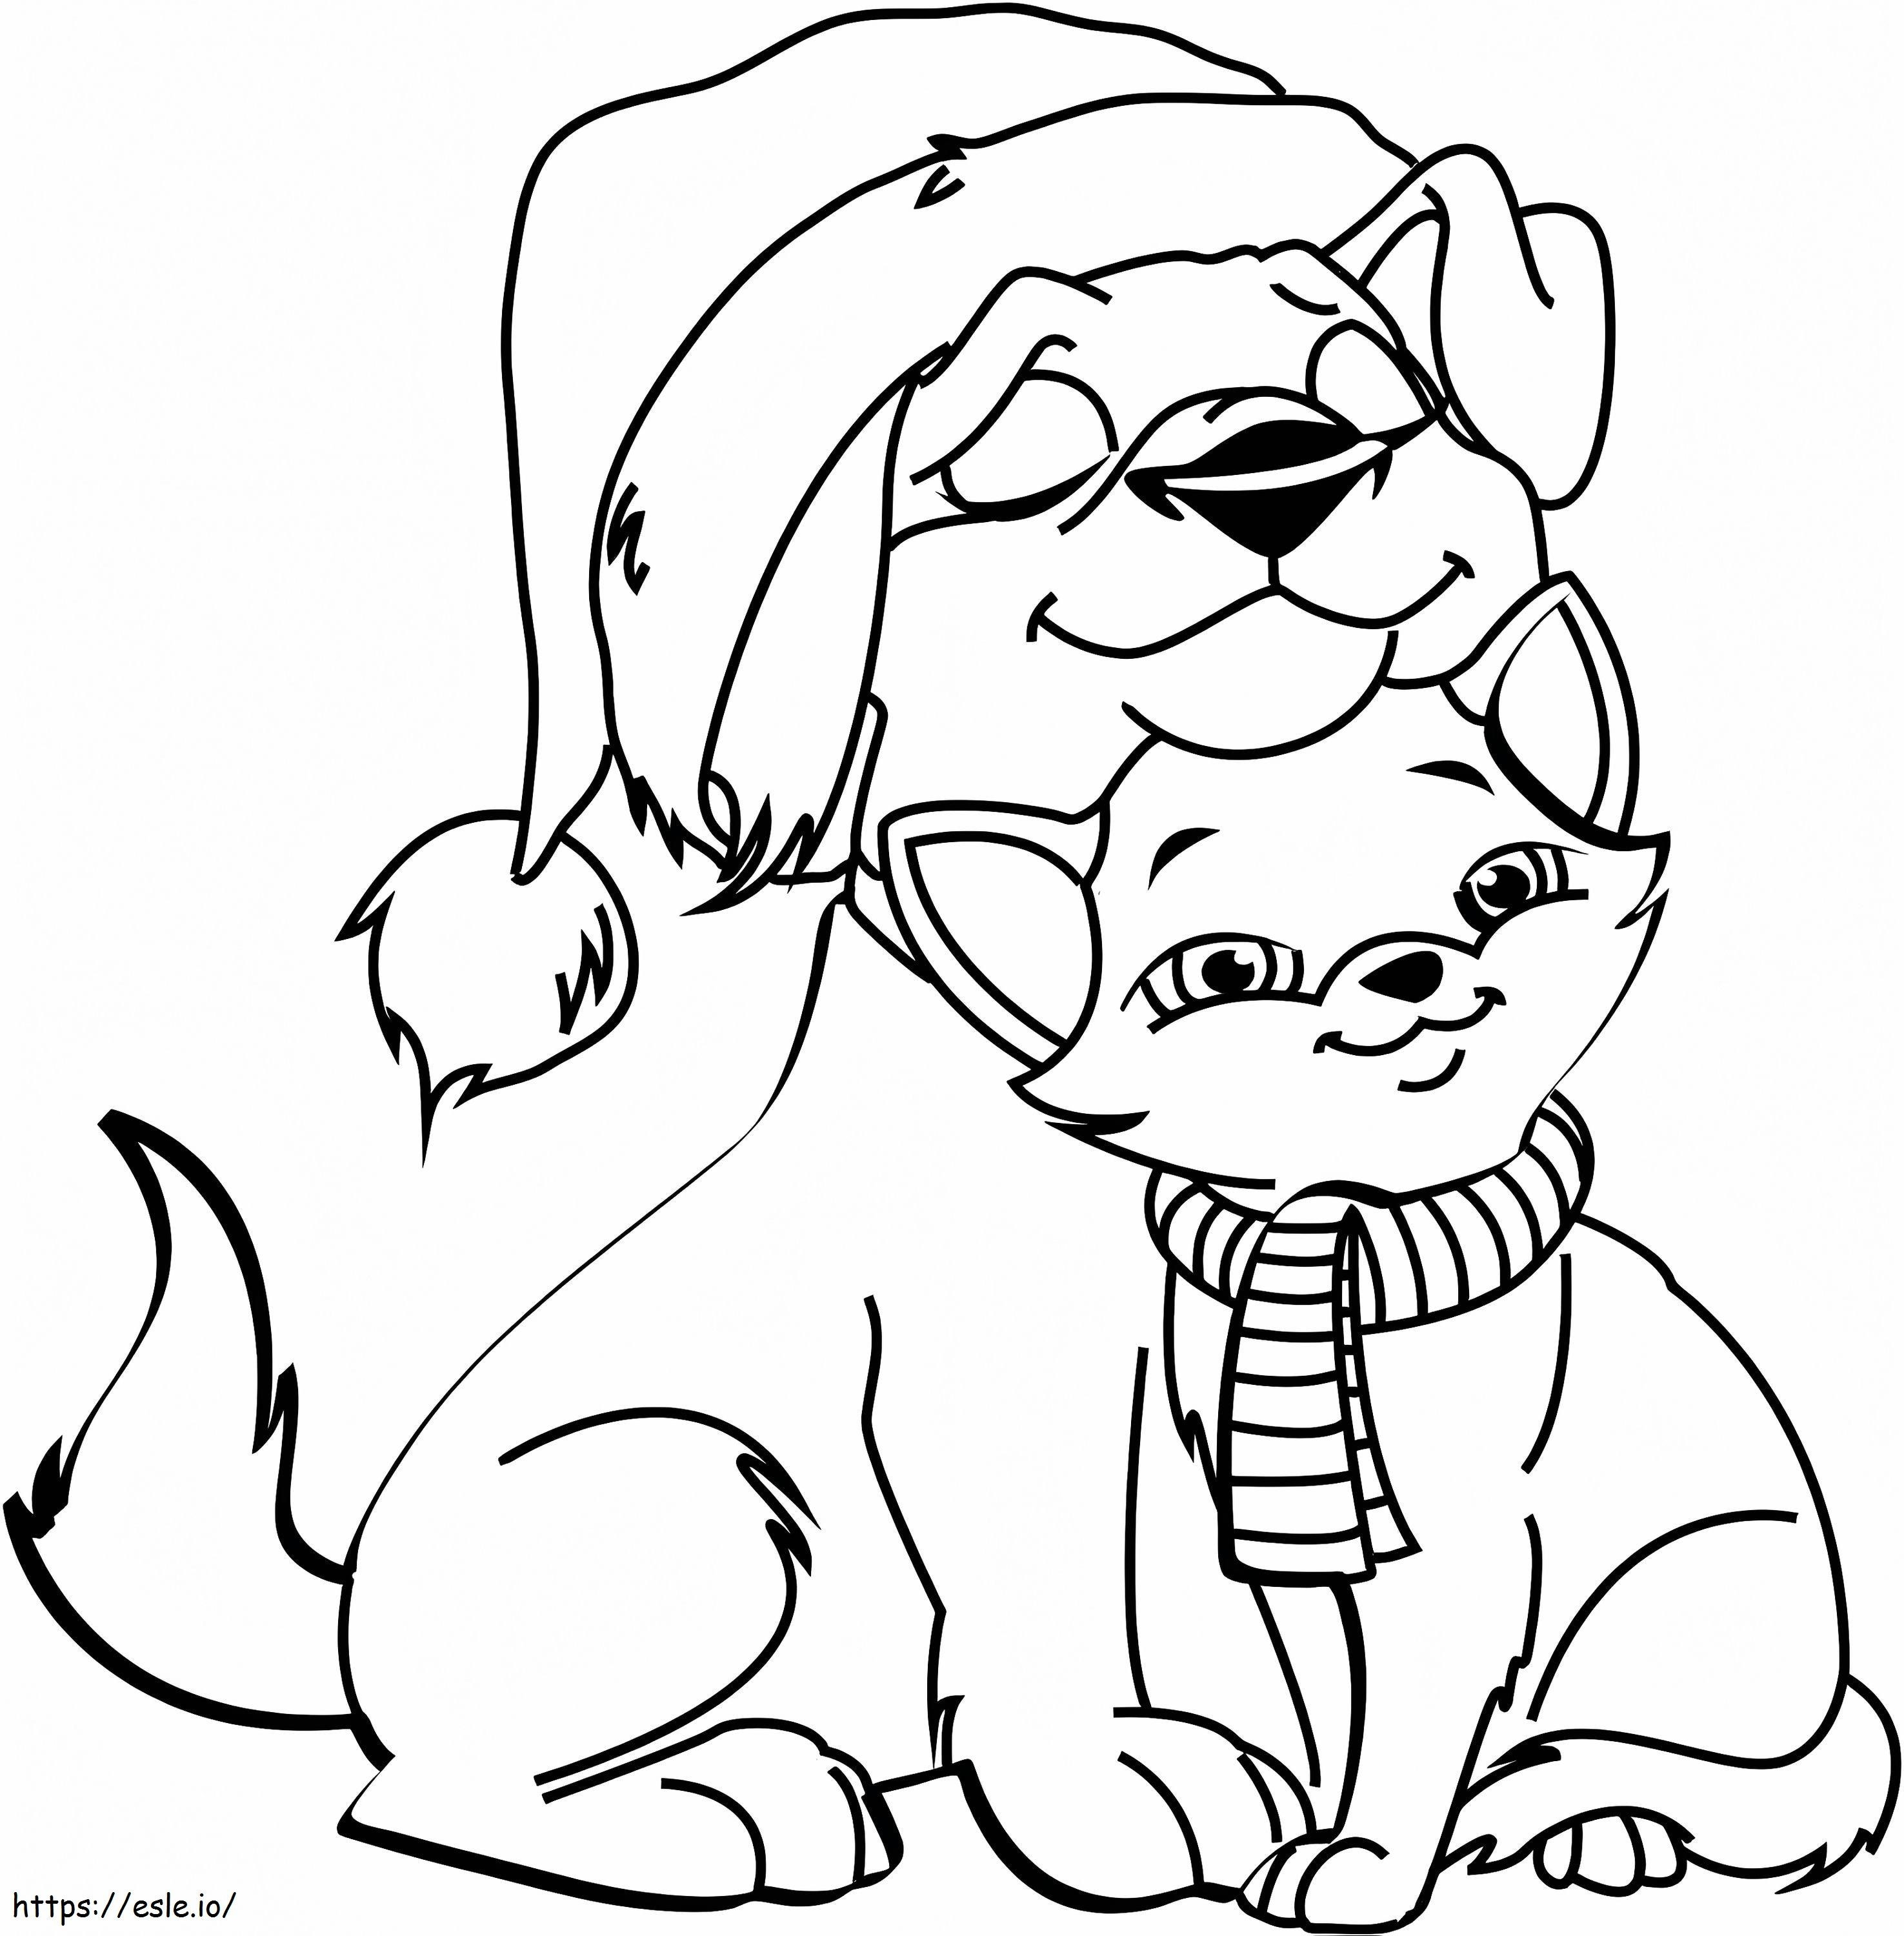 Perro y gato en Navidad para colorear